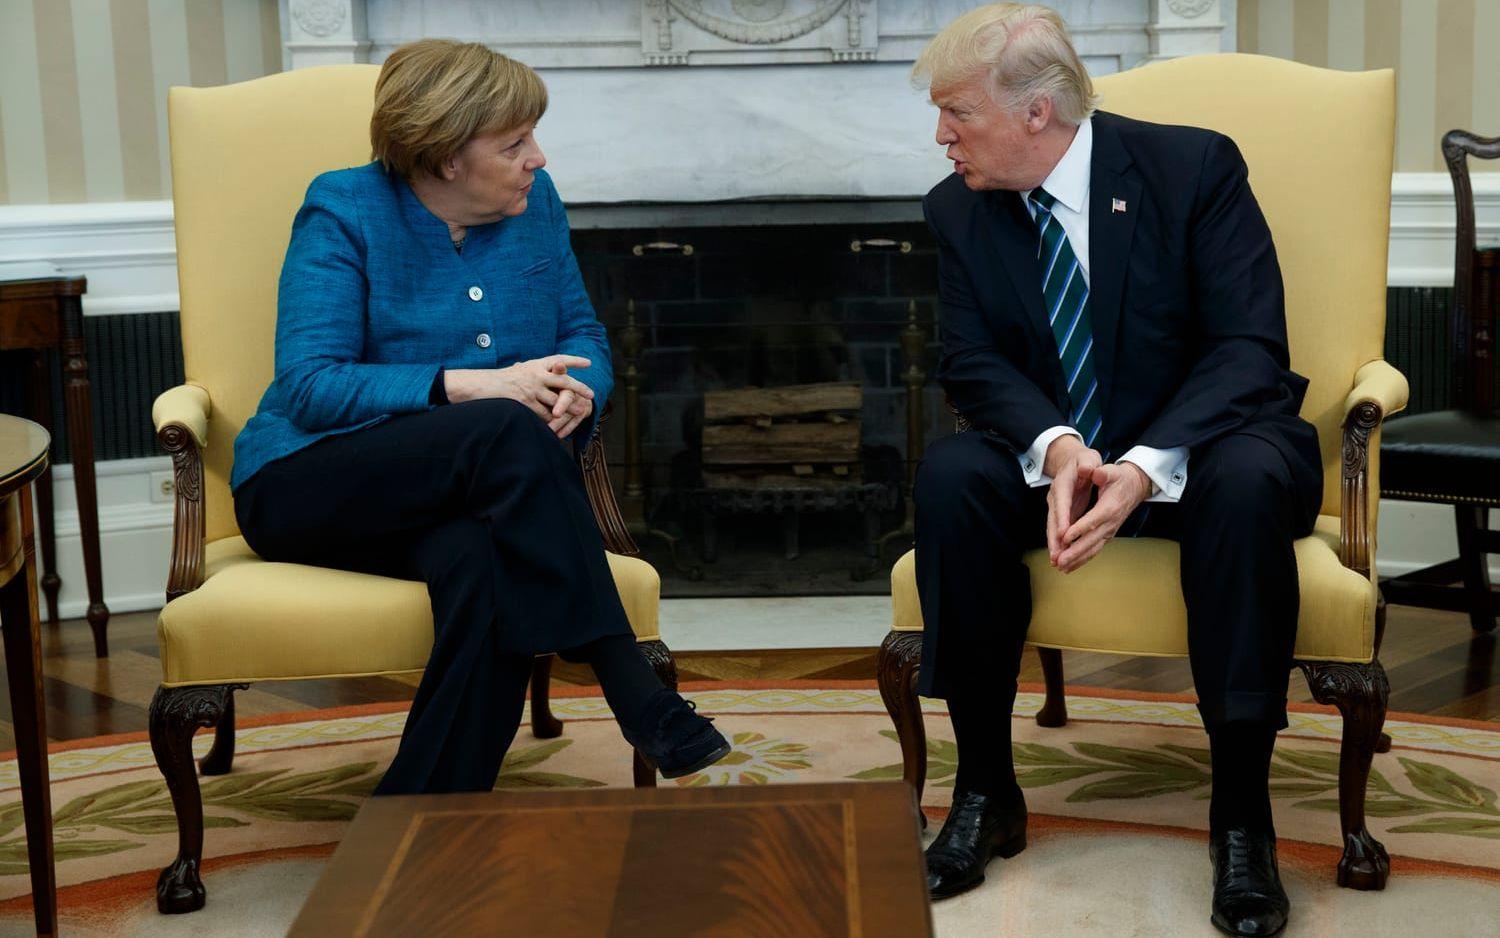 17 MARS: Tysklands förbundskansler Angela Merkel träffar Donald Trump. Det uppstår en diskussion om hur bra deras relation egentligen är och huruvida de vägrade skaka hand inför pressen. Foto: TT